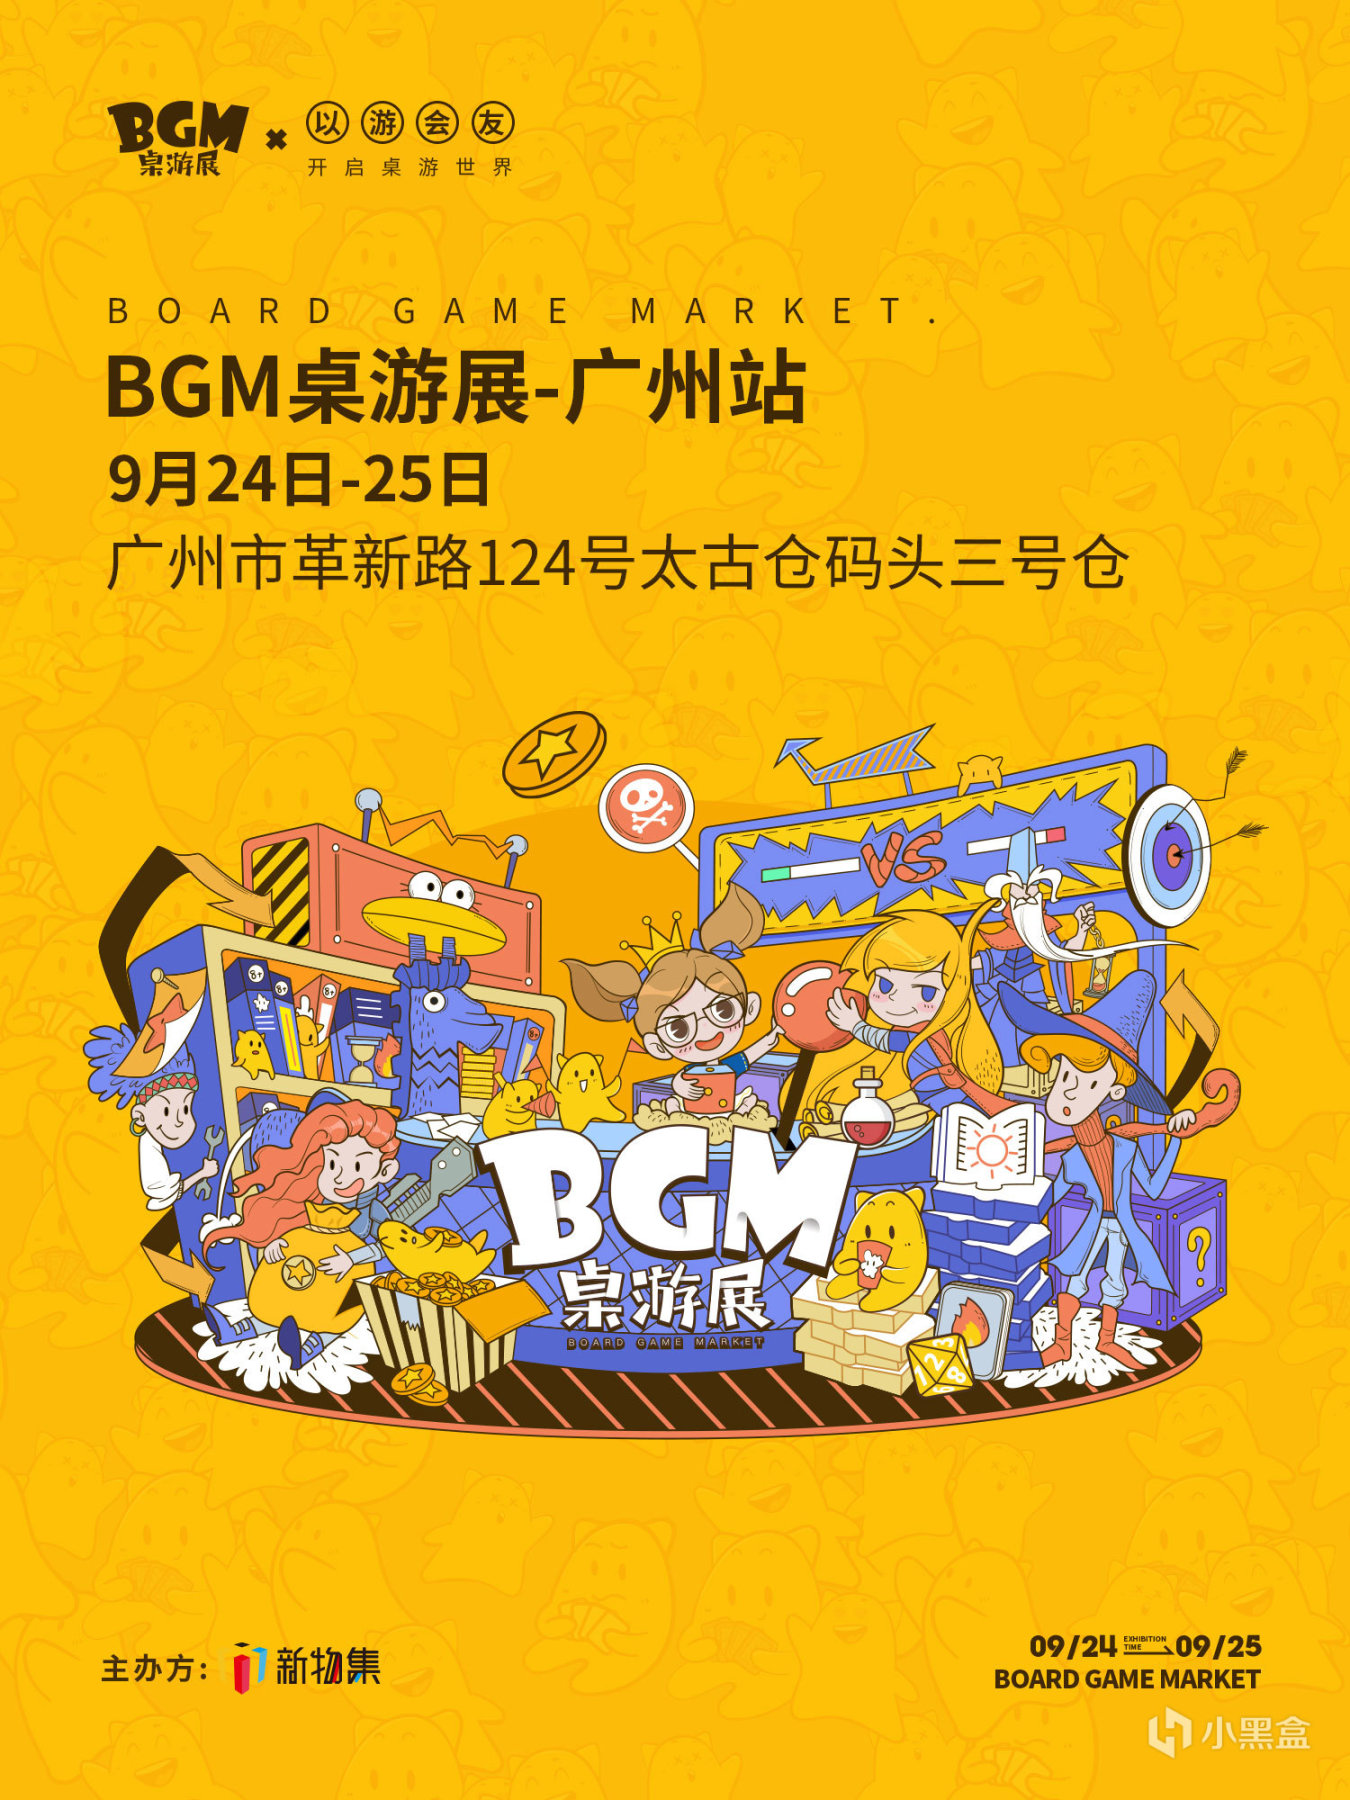 【桌游综合】2022BGM桌游展-广州站门票预售开启！数量有限，快来预约吧